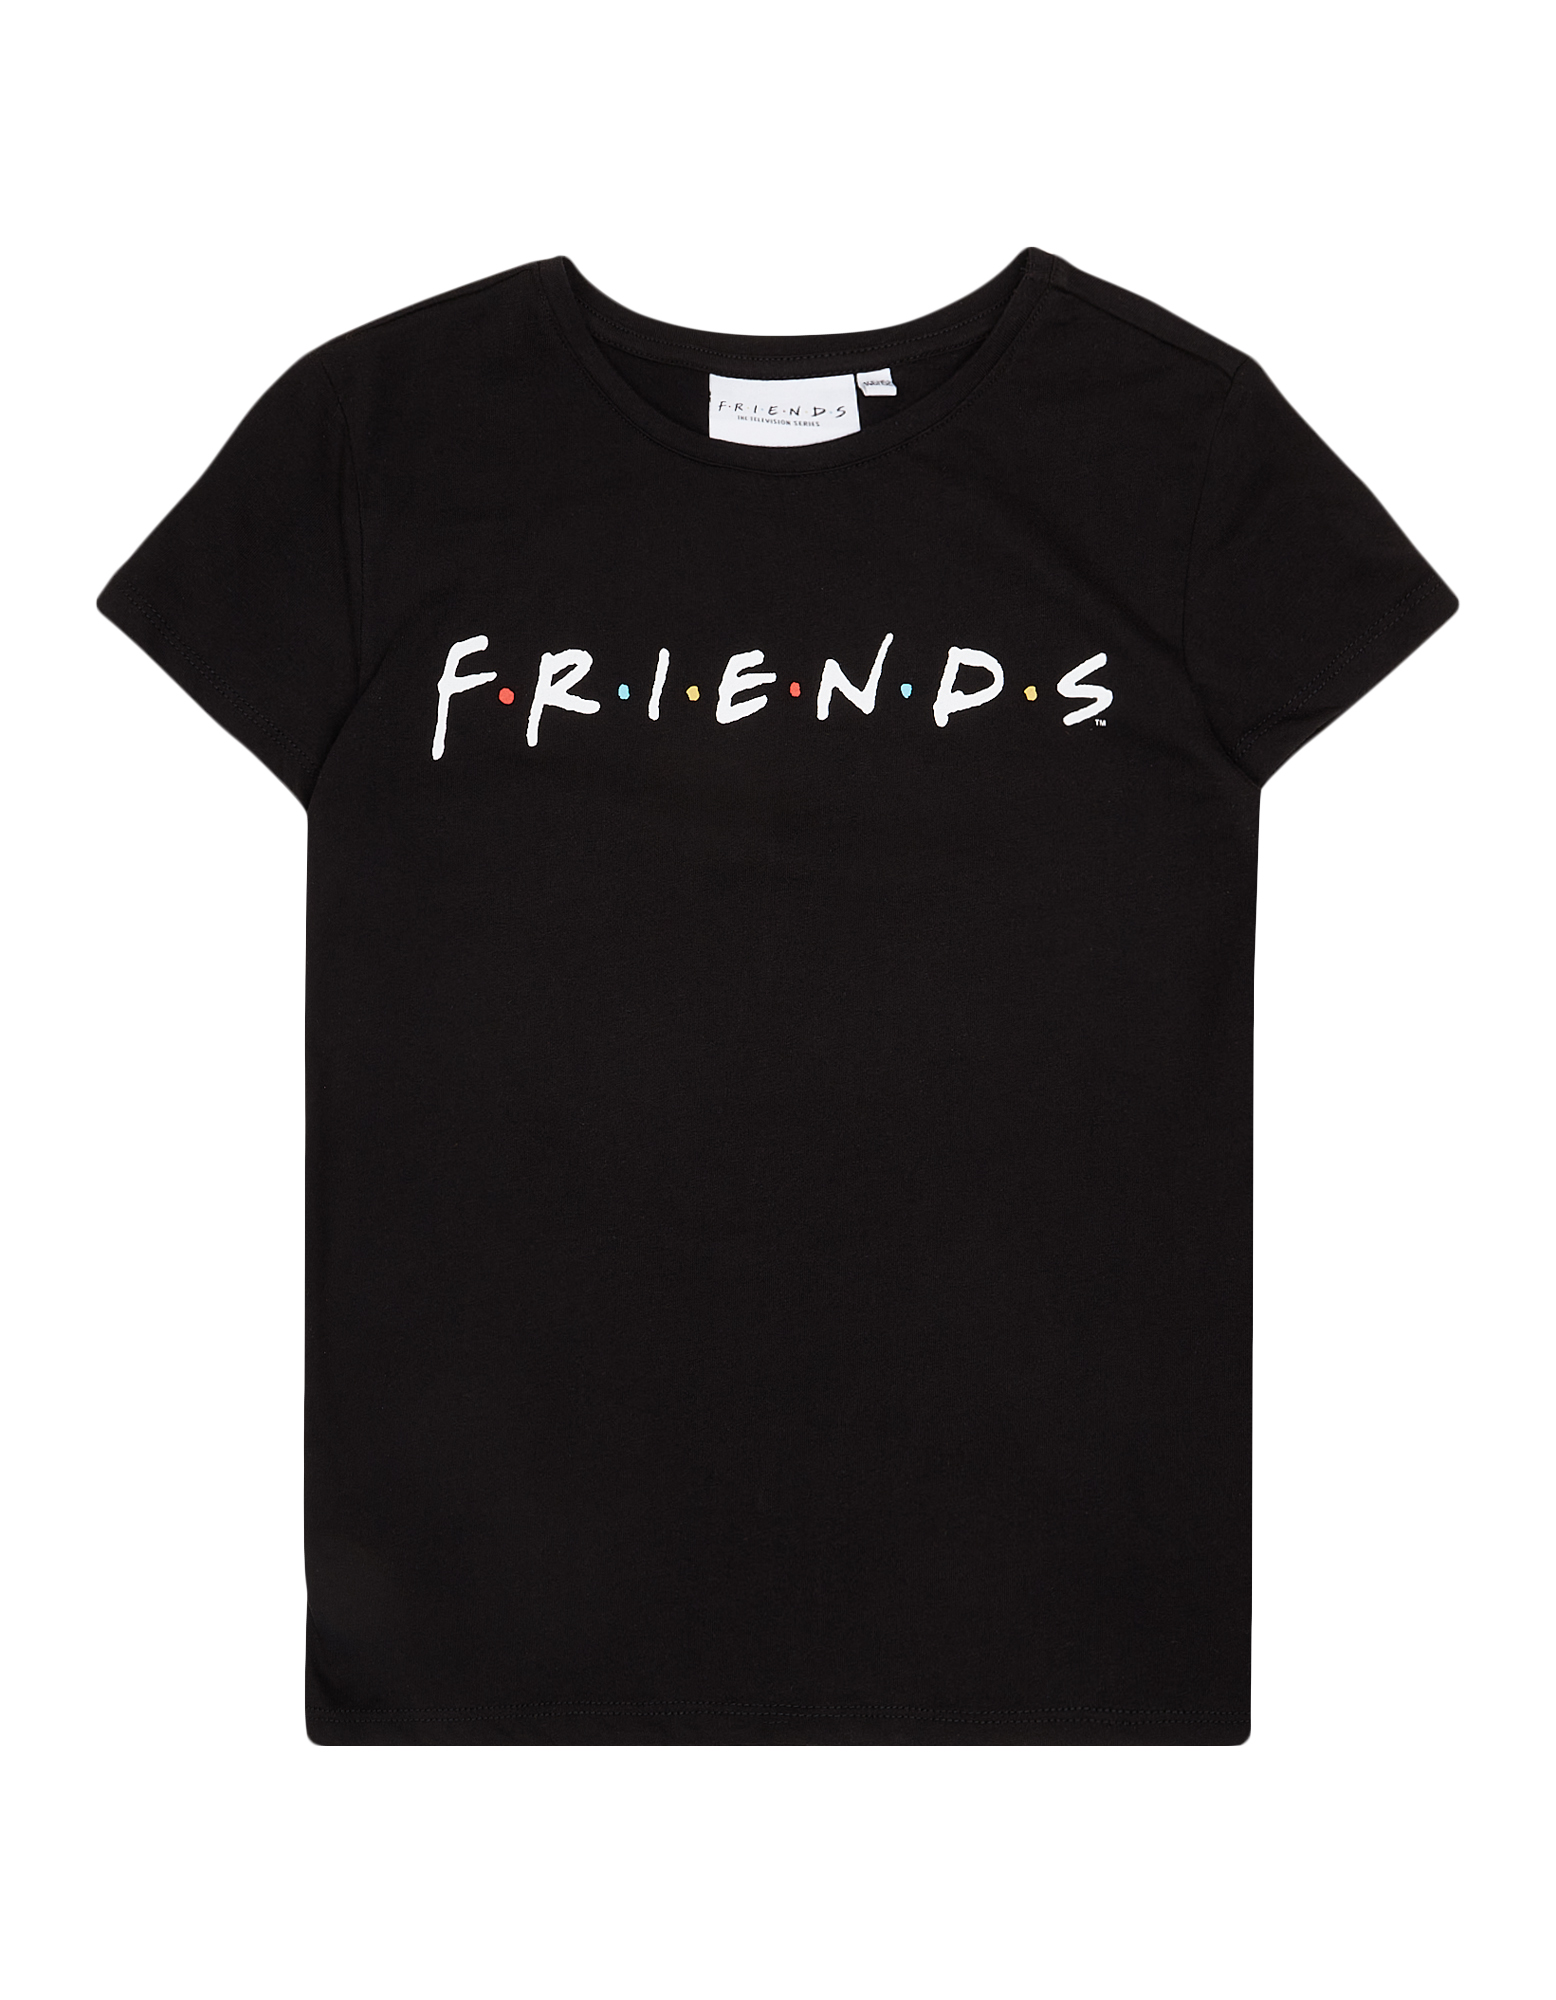 Mädchen T-Shirt mit Friends-Print - Takko Fashion